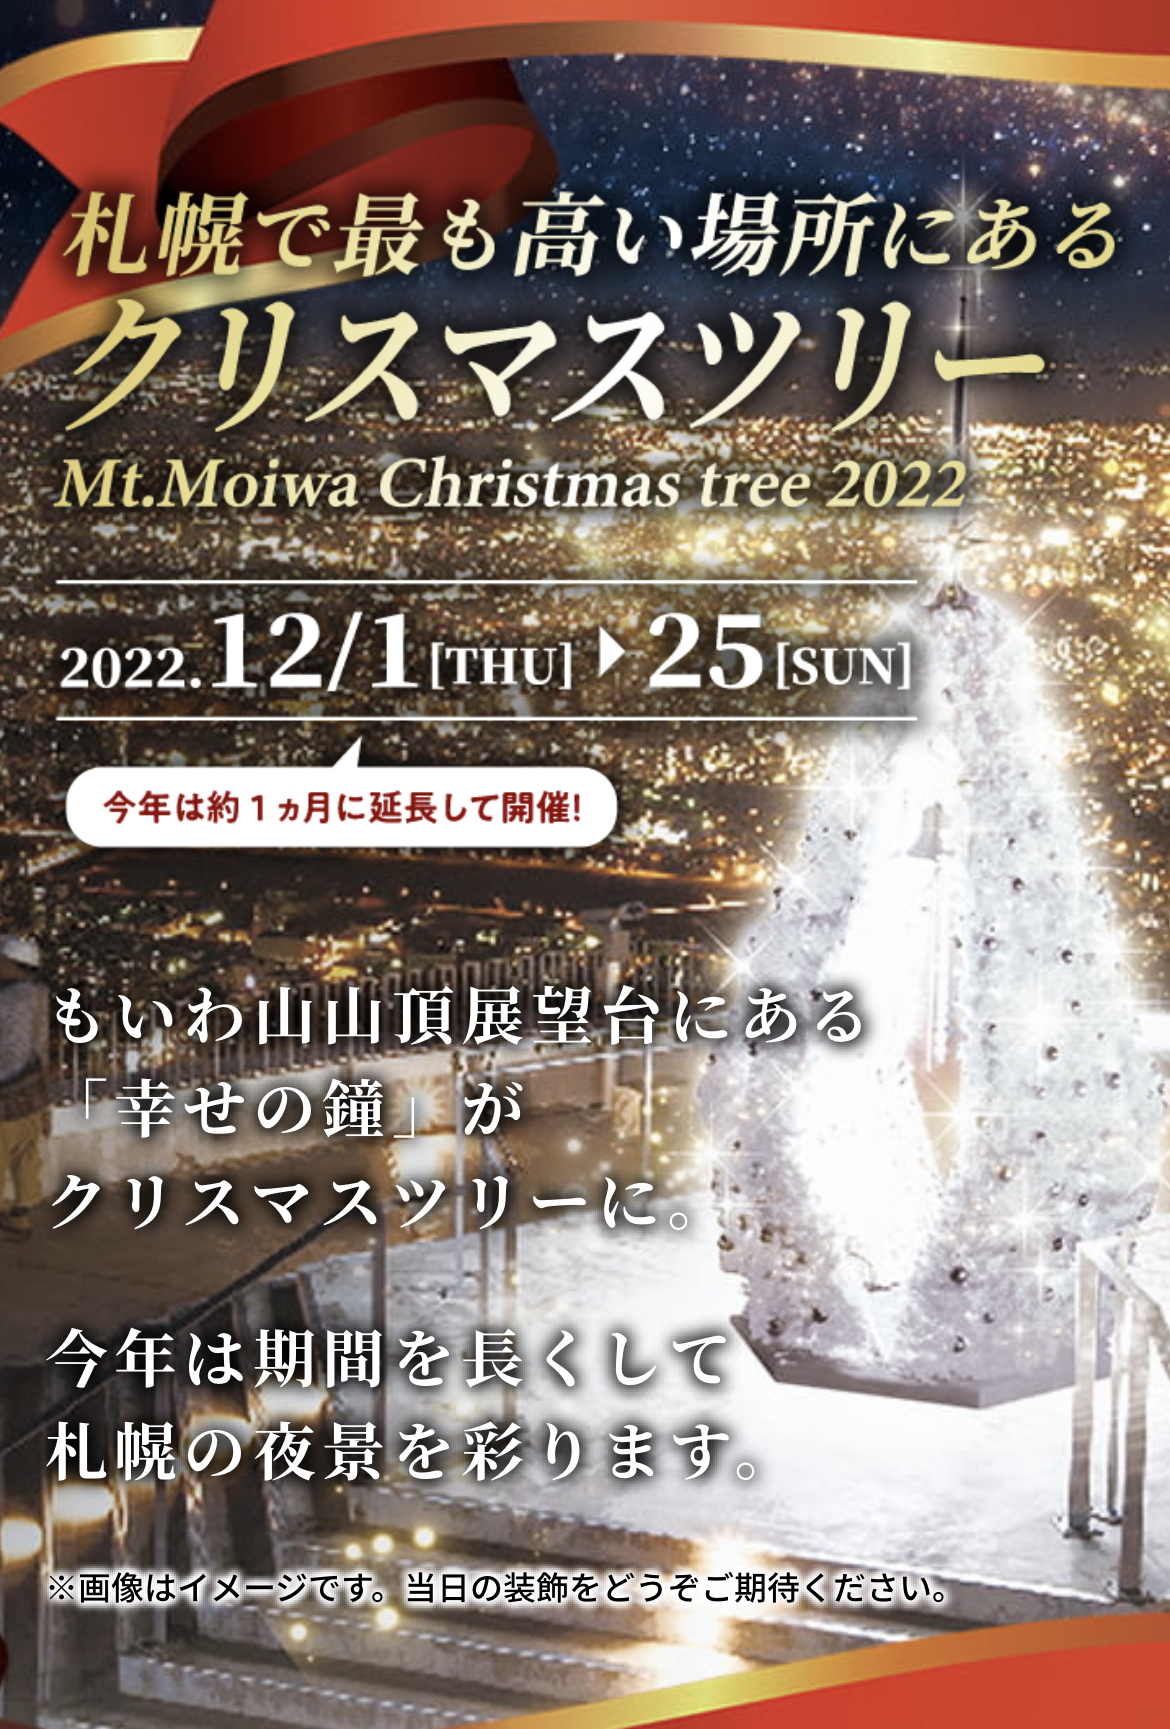 MOIWAYAMA「X’MAS LIVE」